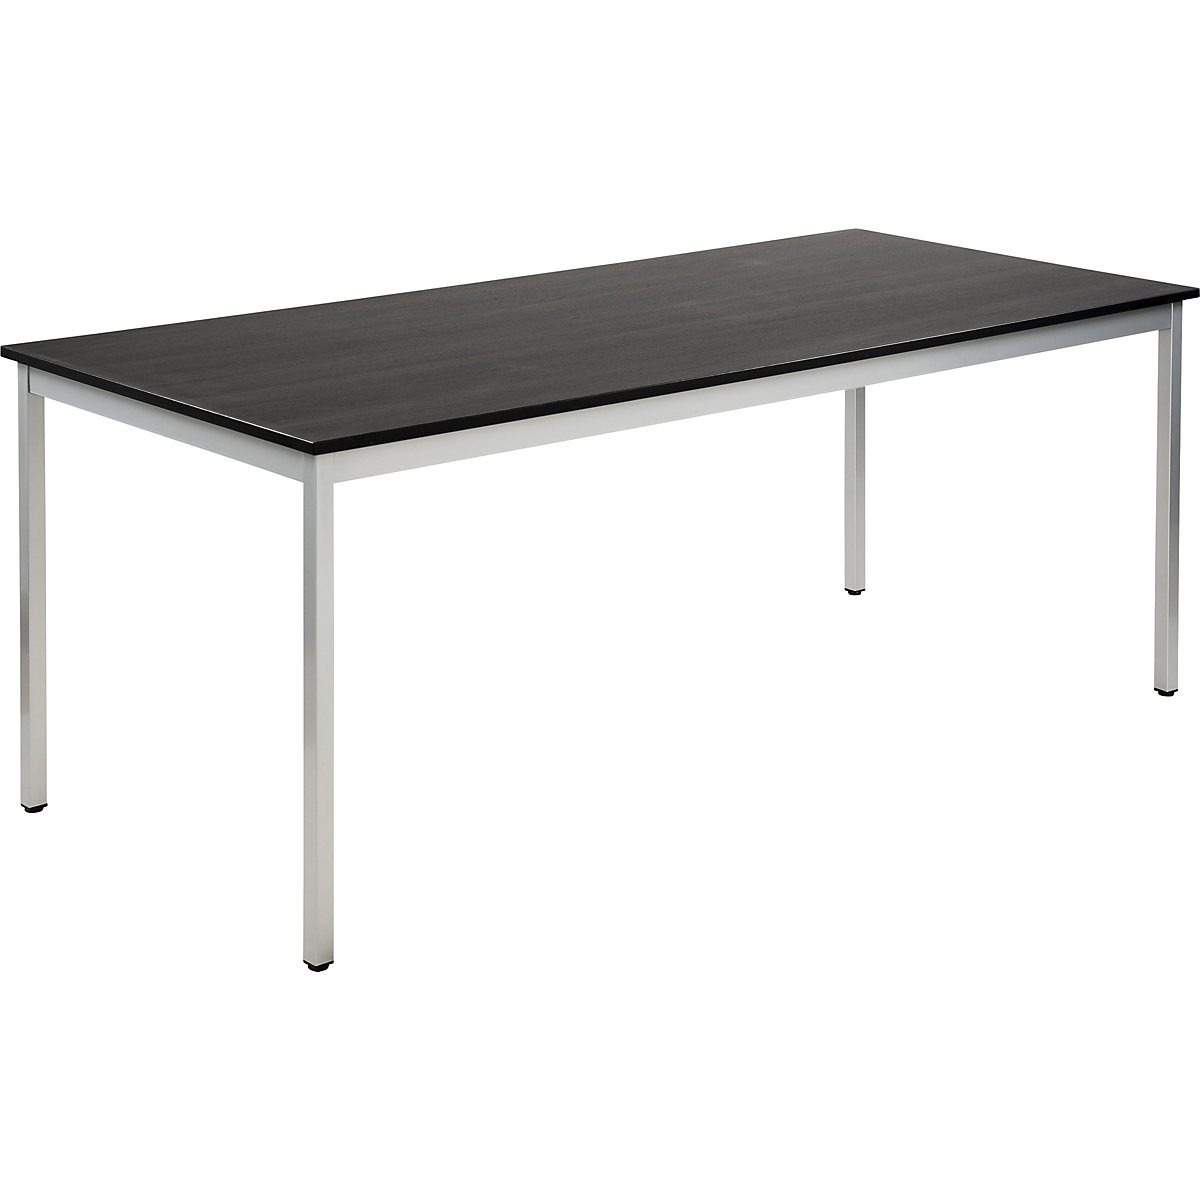 Víceúčelový stůl – eurokraft basic, obdélníkový tvar, v x š x h 740 x 1800 x 800 mm, deska v jasanovém dekoru tmavá šedá, podstavec v barvě bílý hliník-15